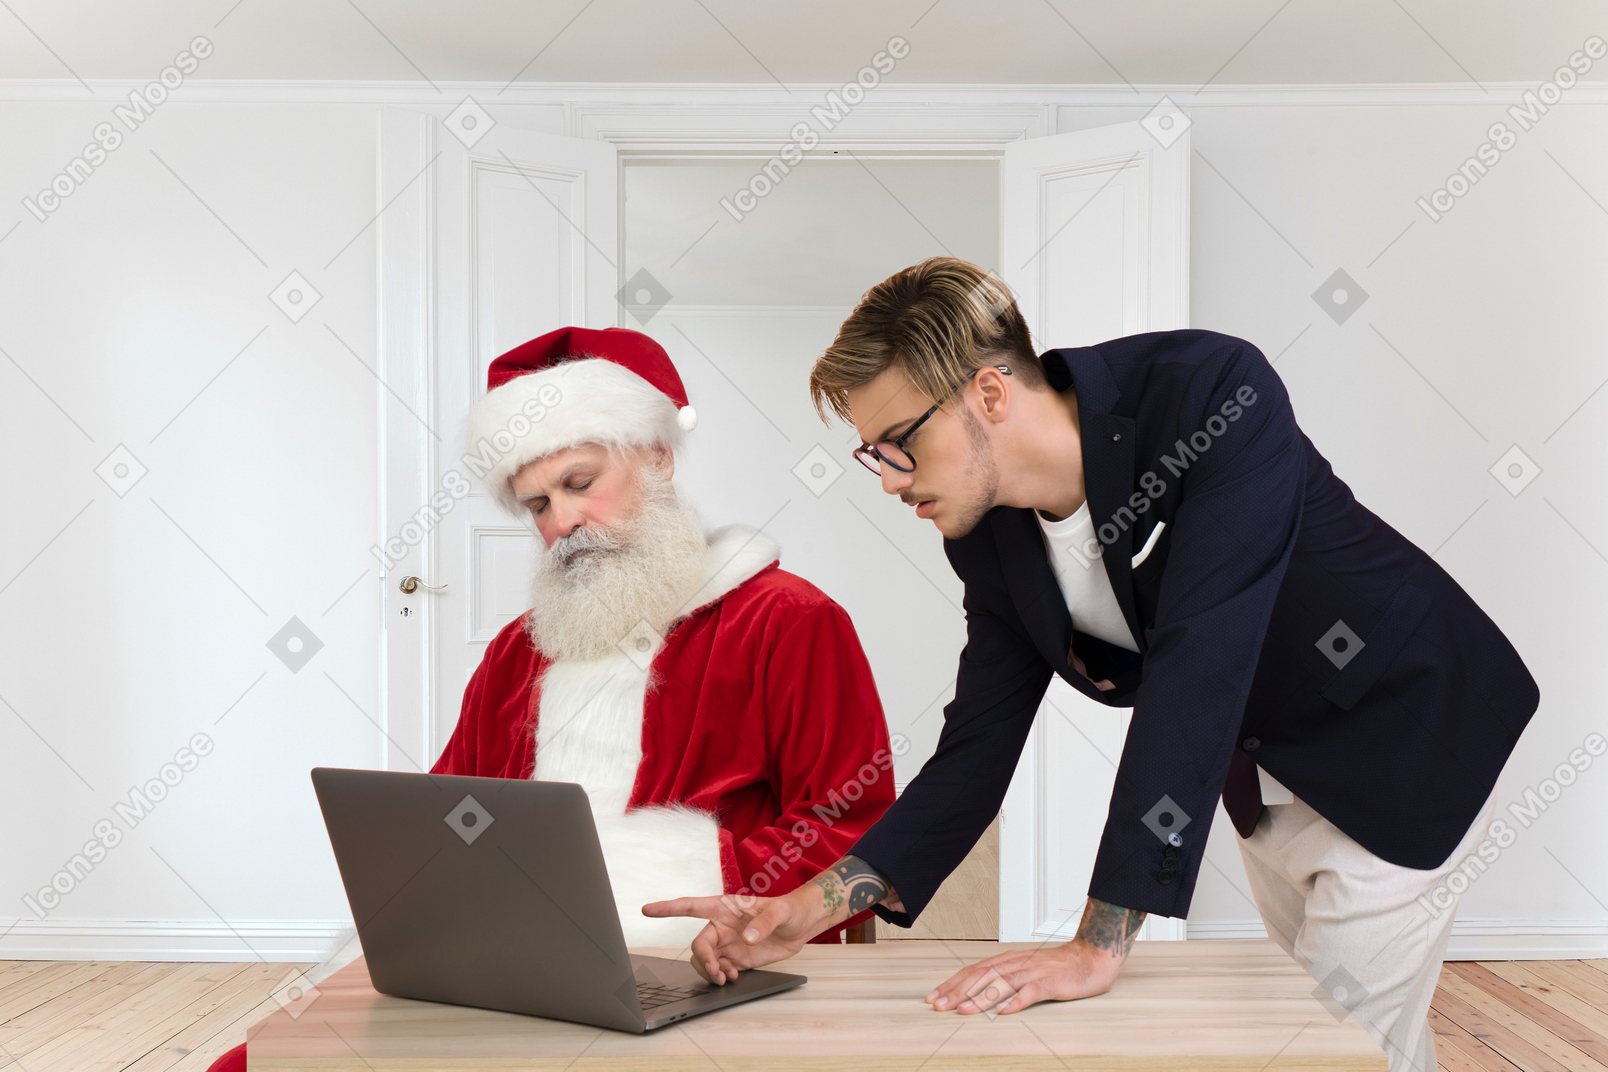 Санта-клаус дремлет, пока молодой человек проверяет некоторую информацию на компьютере